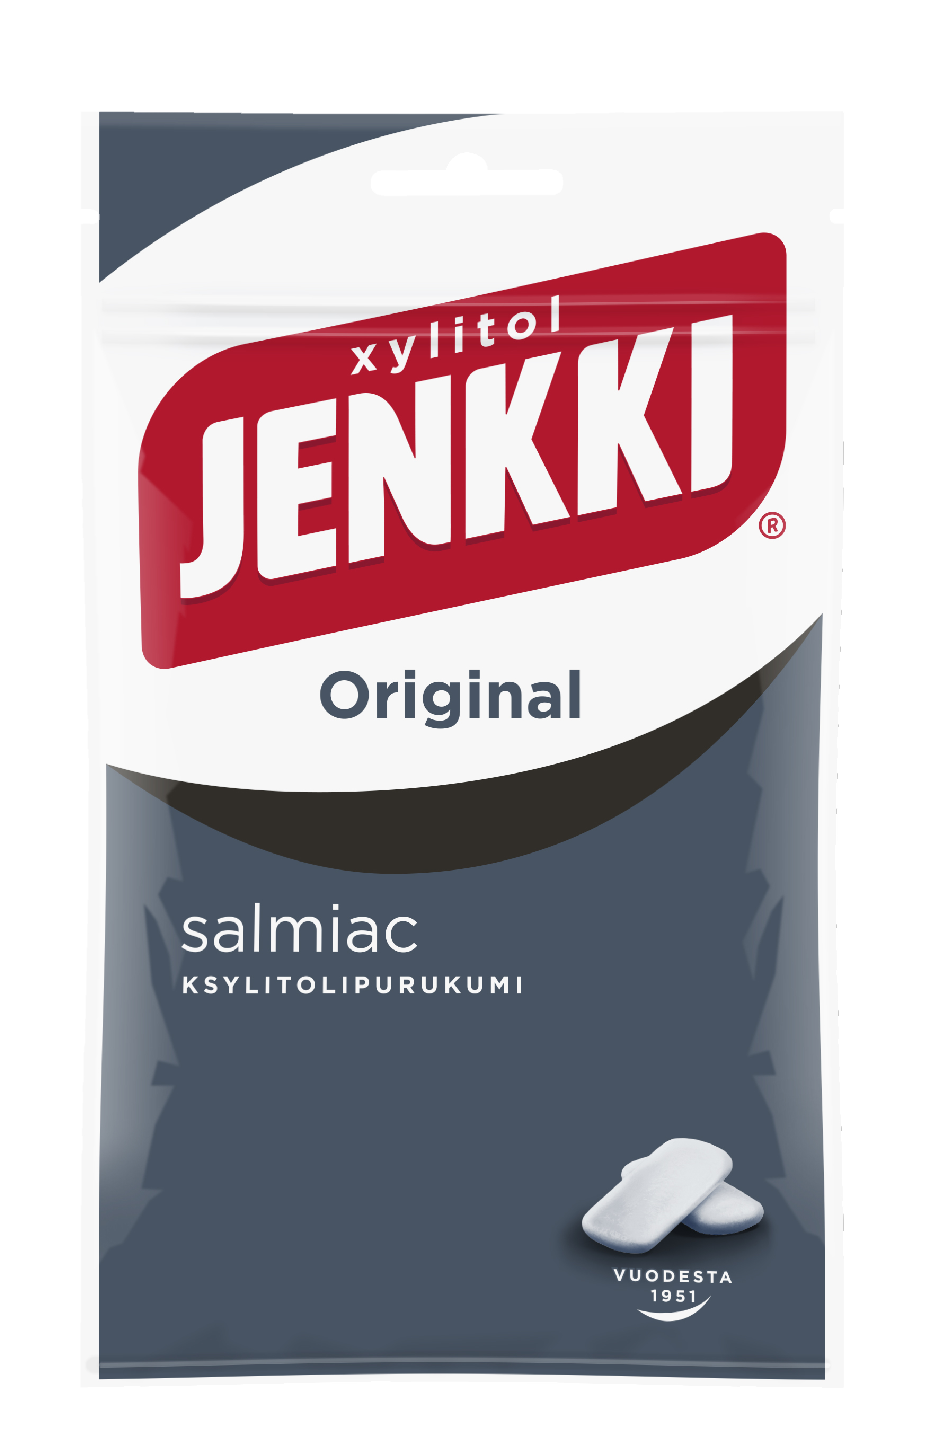 Jenkki Original Salmiac ksylitolipurukumi 100g